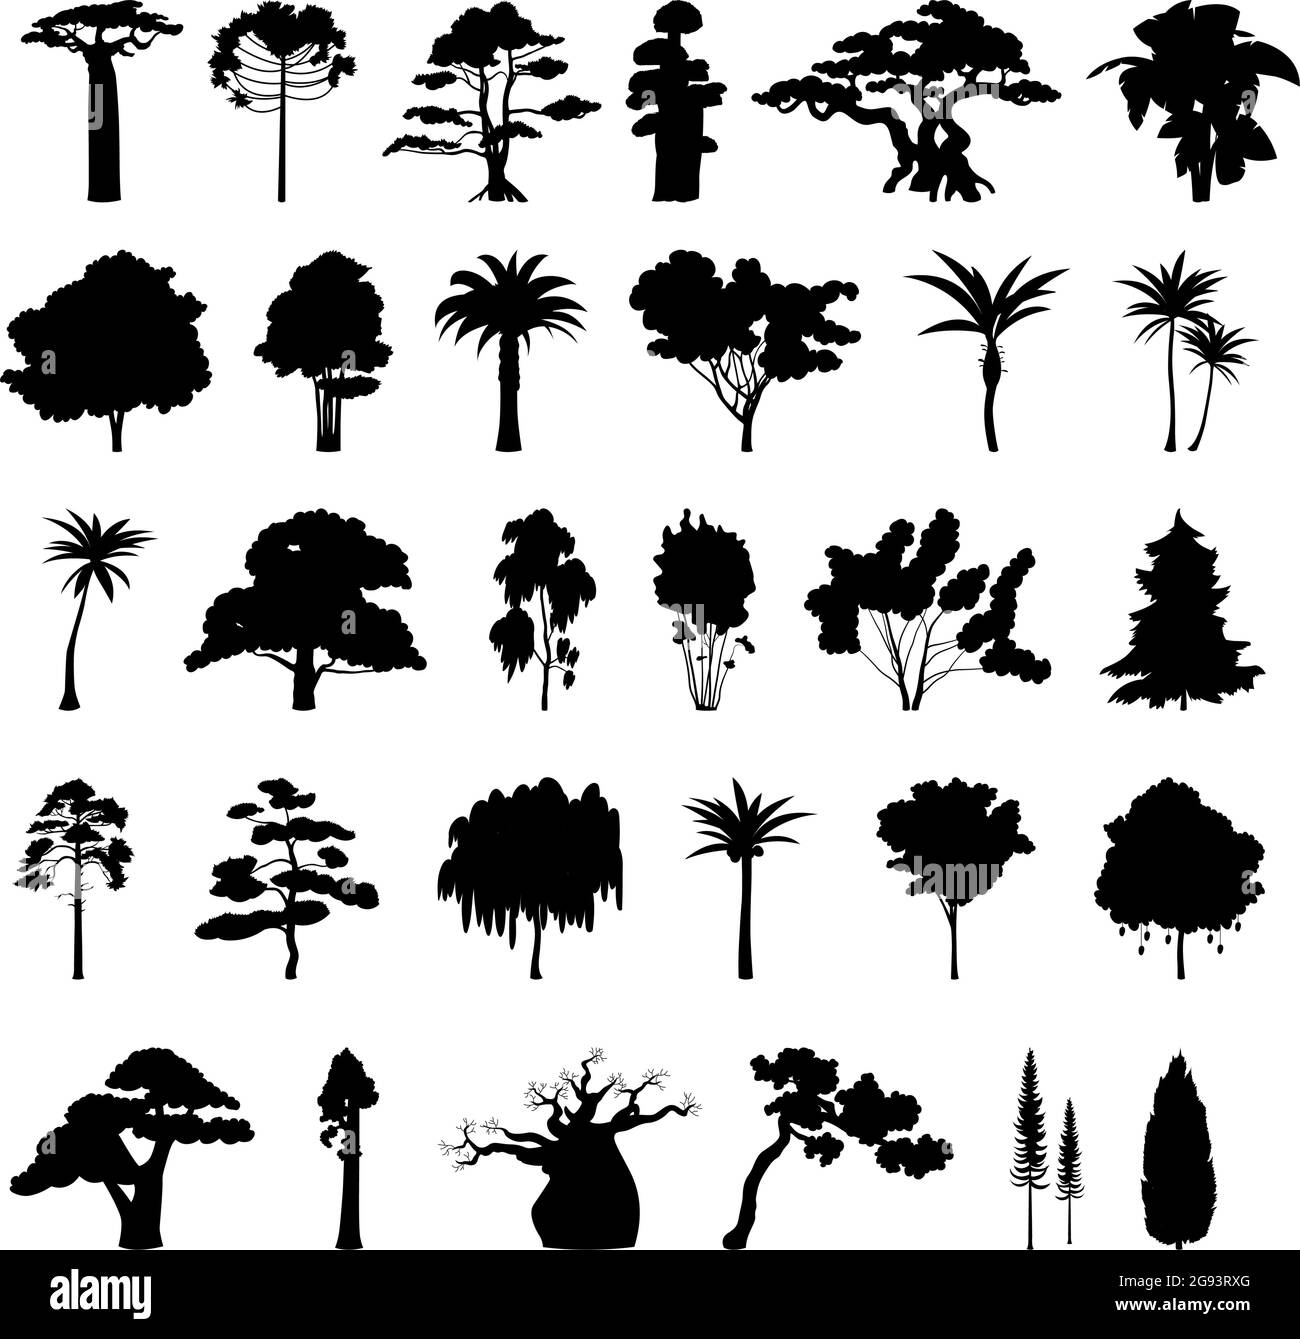 Seth schwarze Silhouetten von Bäumen aus verschiedenen Klimazonen auf weißem Hintergrund - Vektorgrafik Stock Vektor